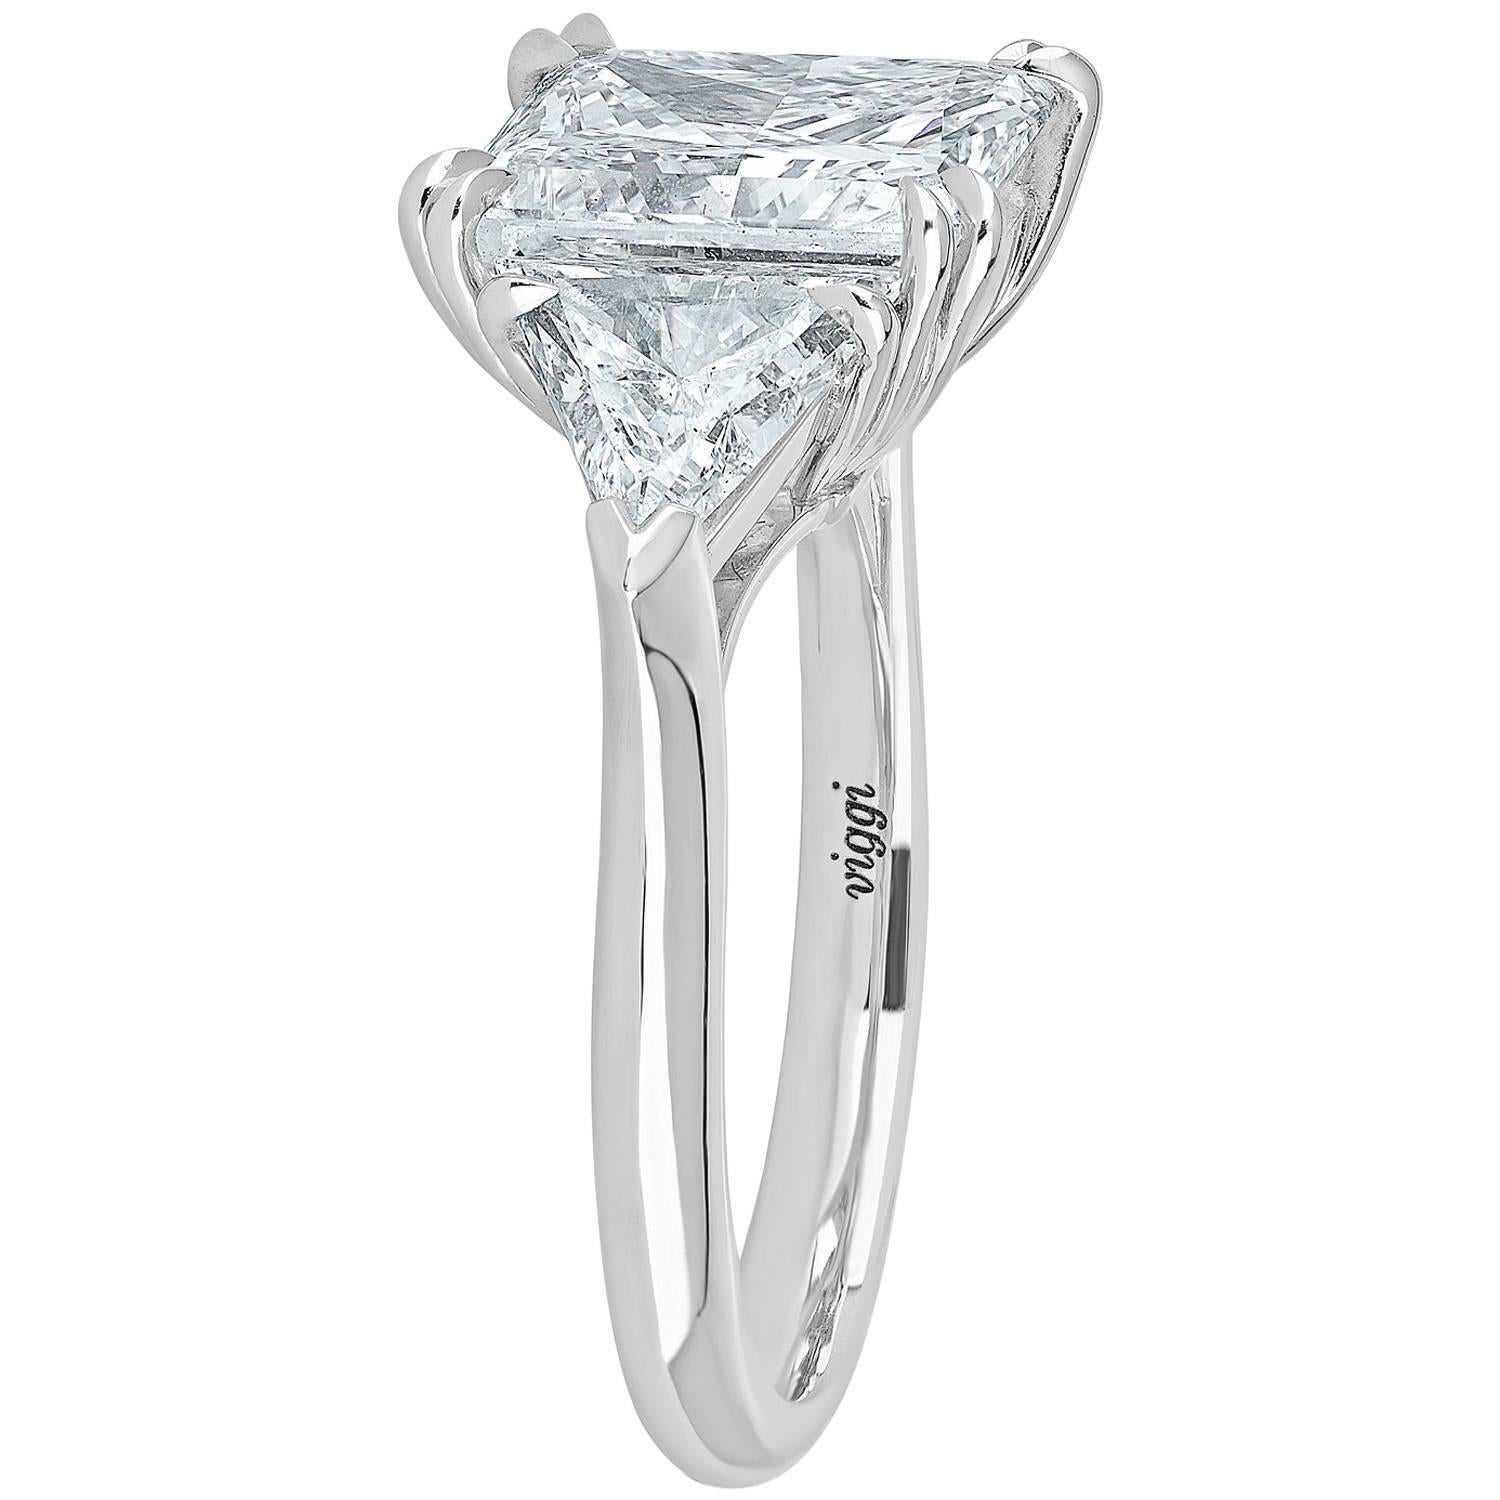 Platinum Ring 5.02 Cut Princess Cut Diamond D Color and Trillion Cut Diamonds For Sale